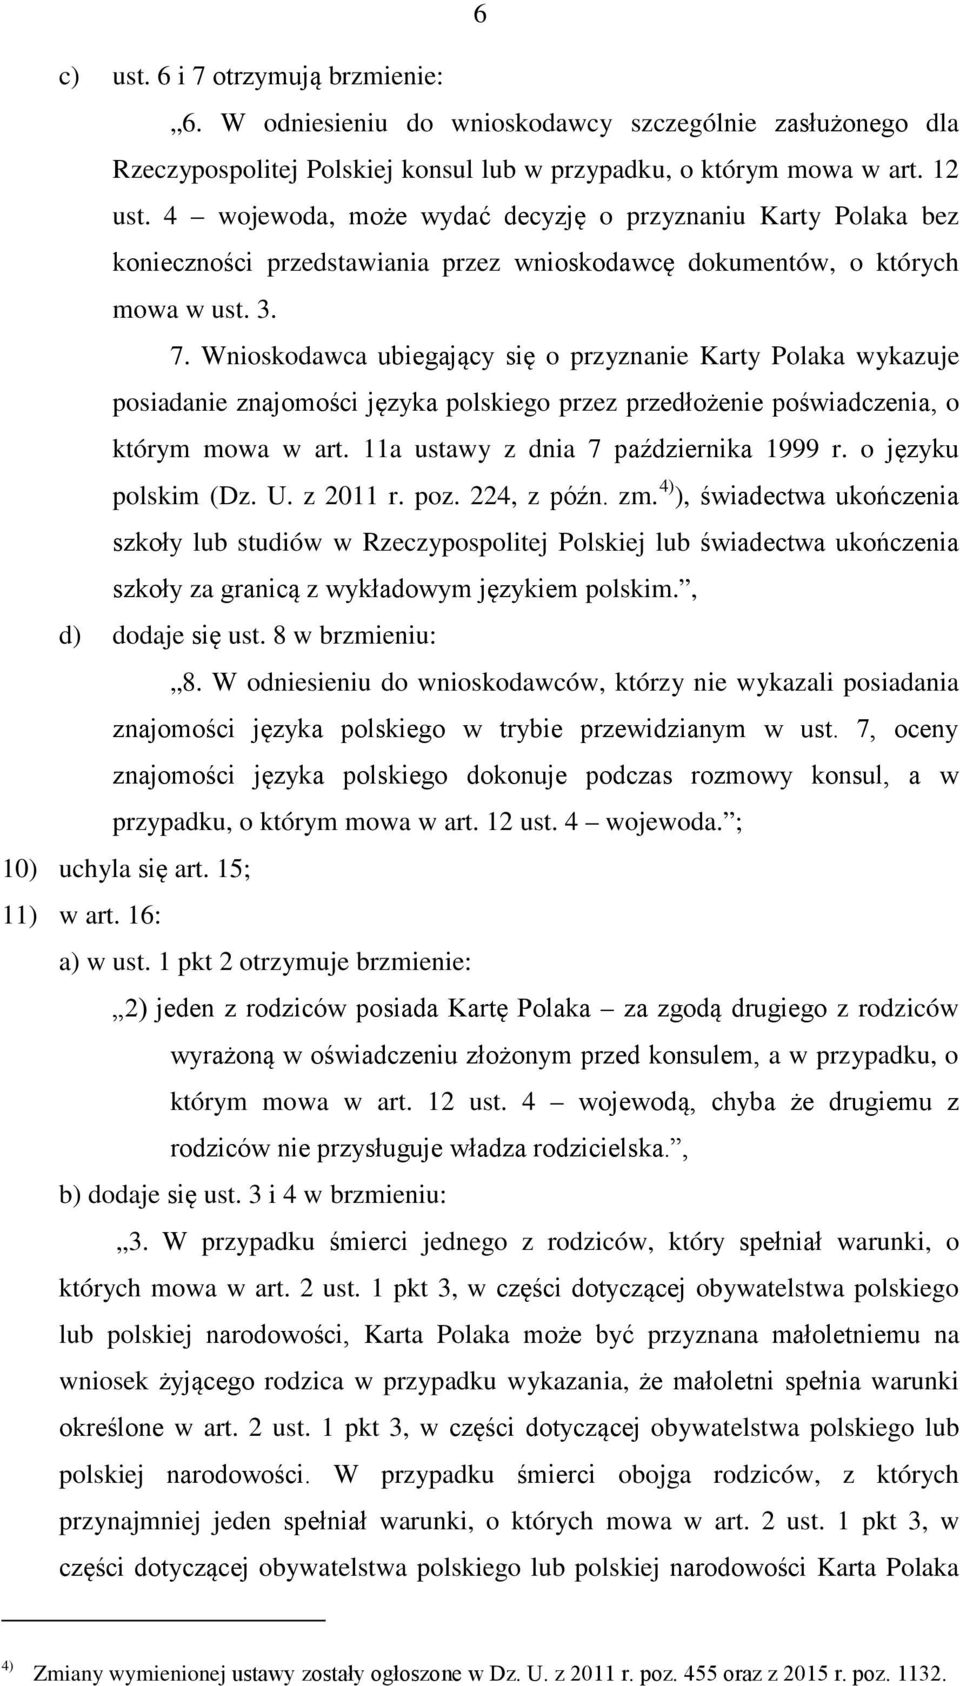 Wnioskodawca ubiegający się o przyznanie Karty Polaka wykazuje posiadanie znajomości języka polskiego przez przedłożenie poświadczenia, o którym mowa w art. 11a ustawy z dnia 7 października 1999 r.